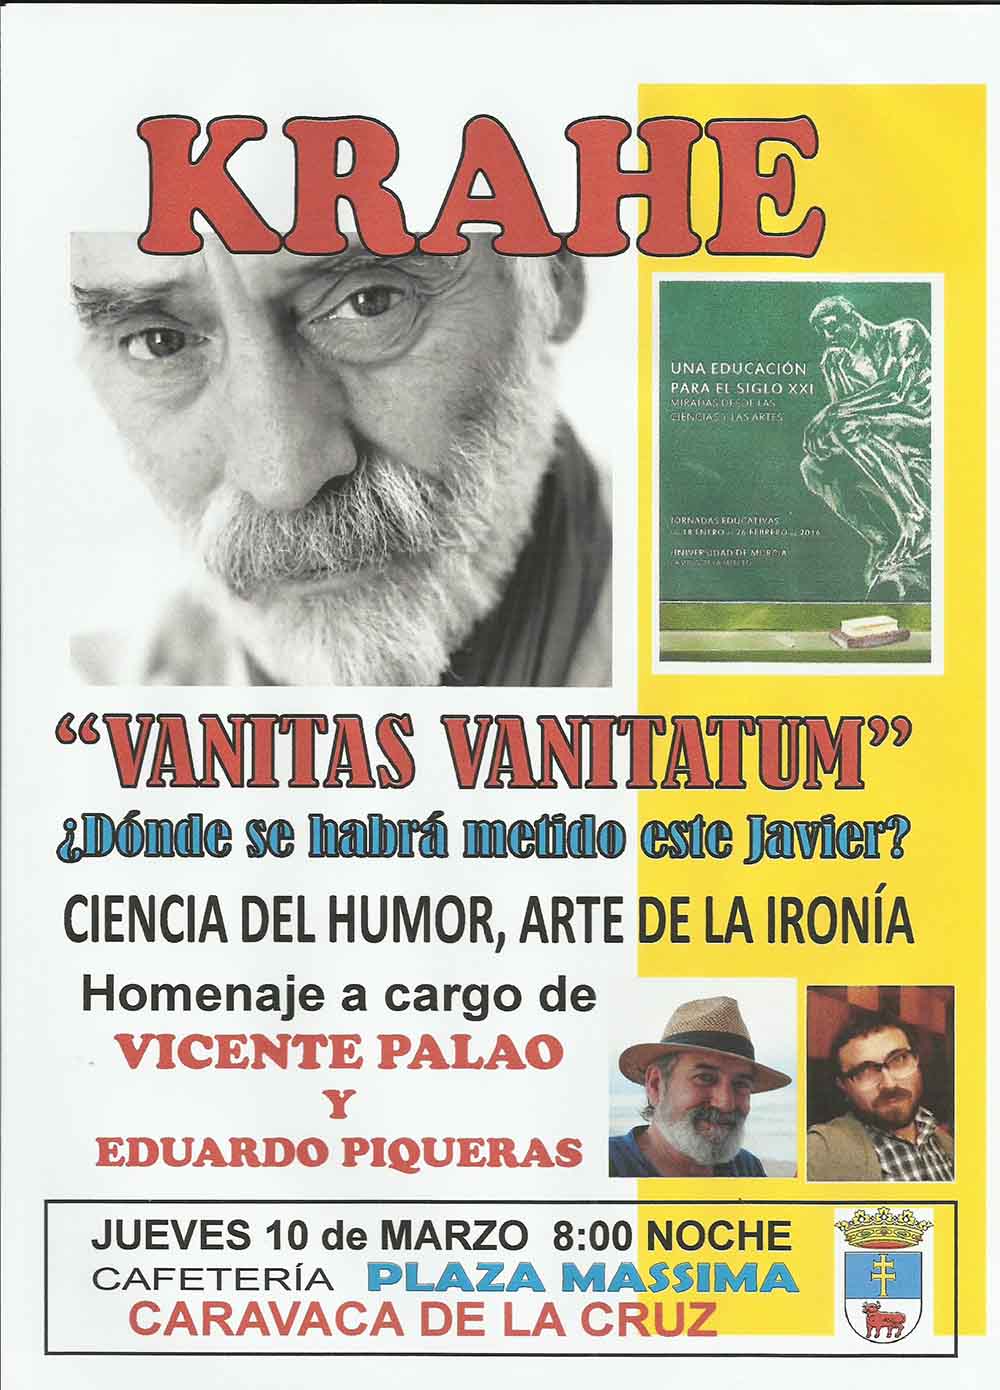 Homenaje a Javier Krahe en Caravaca el 10 de marzo dentro de las jornadas "Una educación para el siglo XXI"